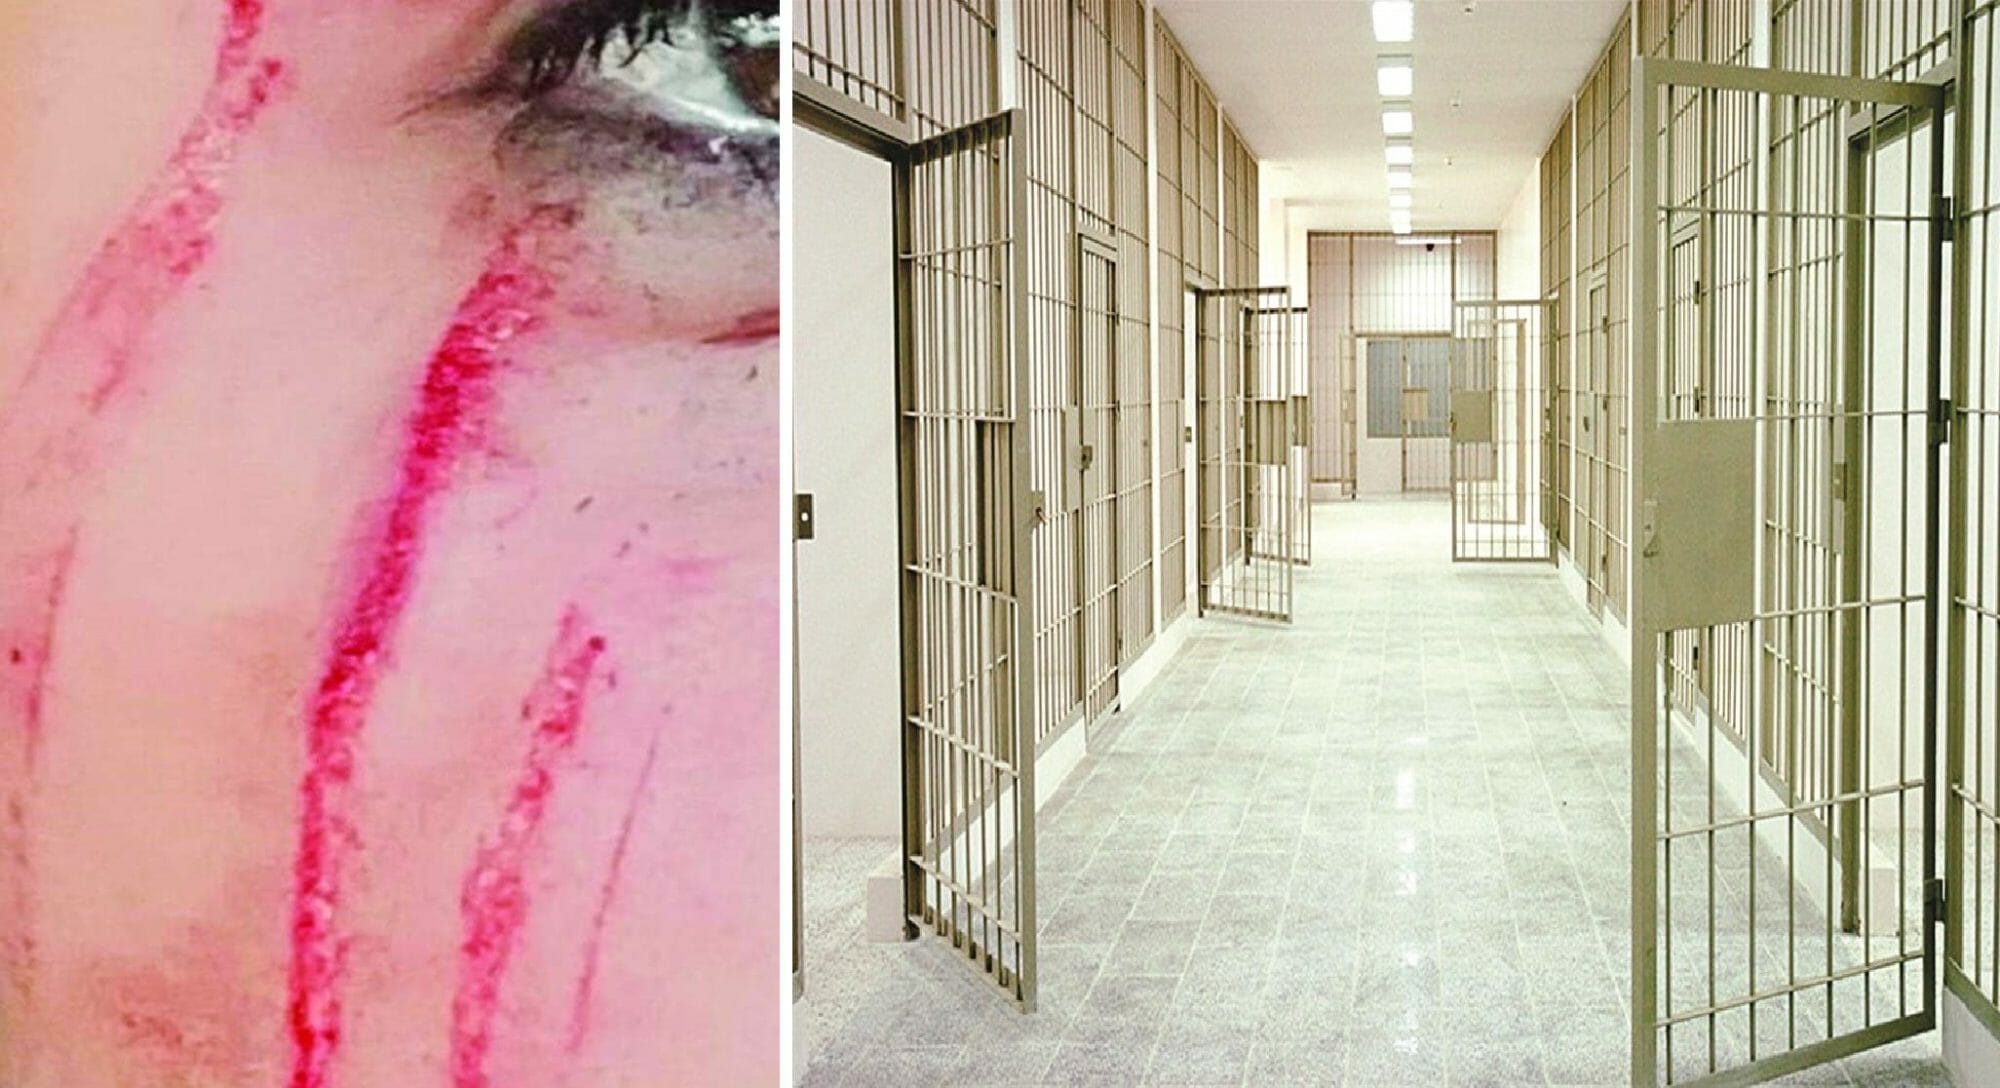 سجينة تعتدي على ضابطة كويتية watanserb.com